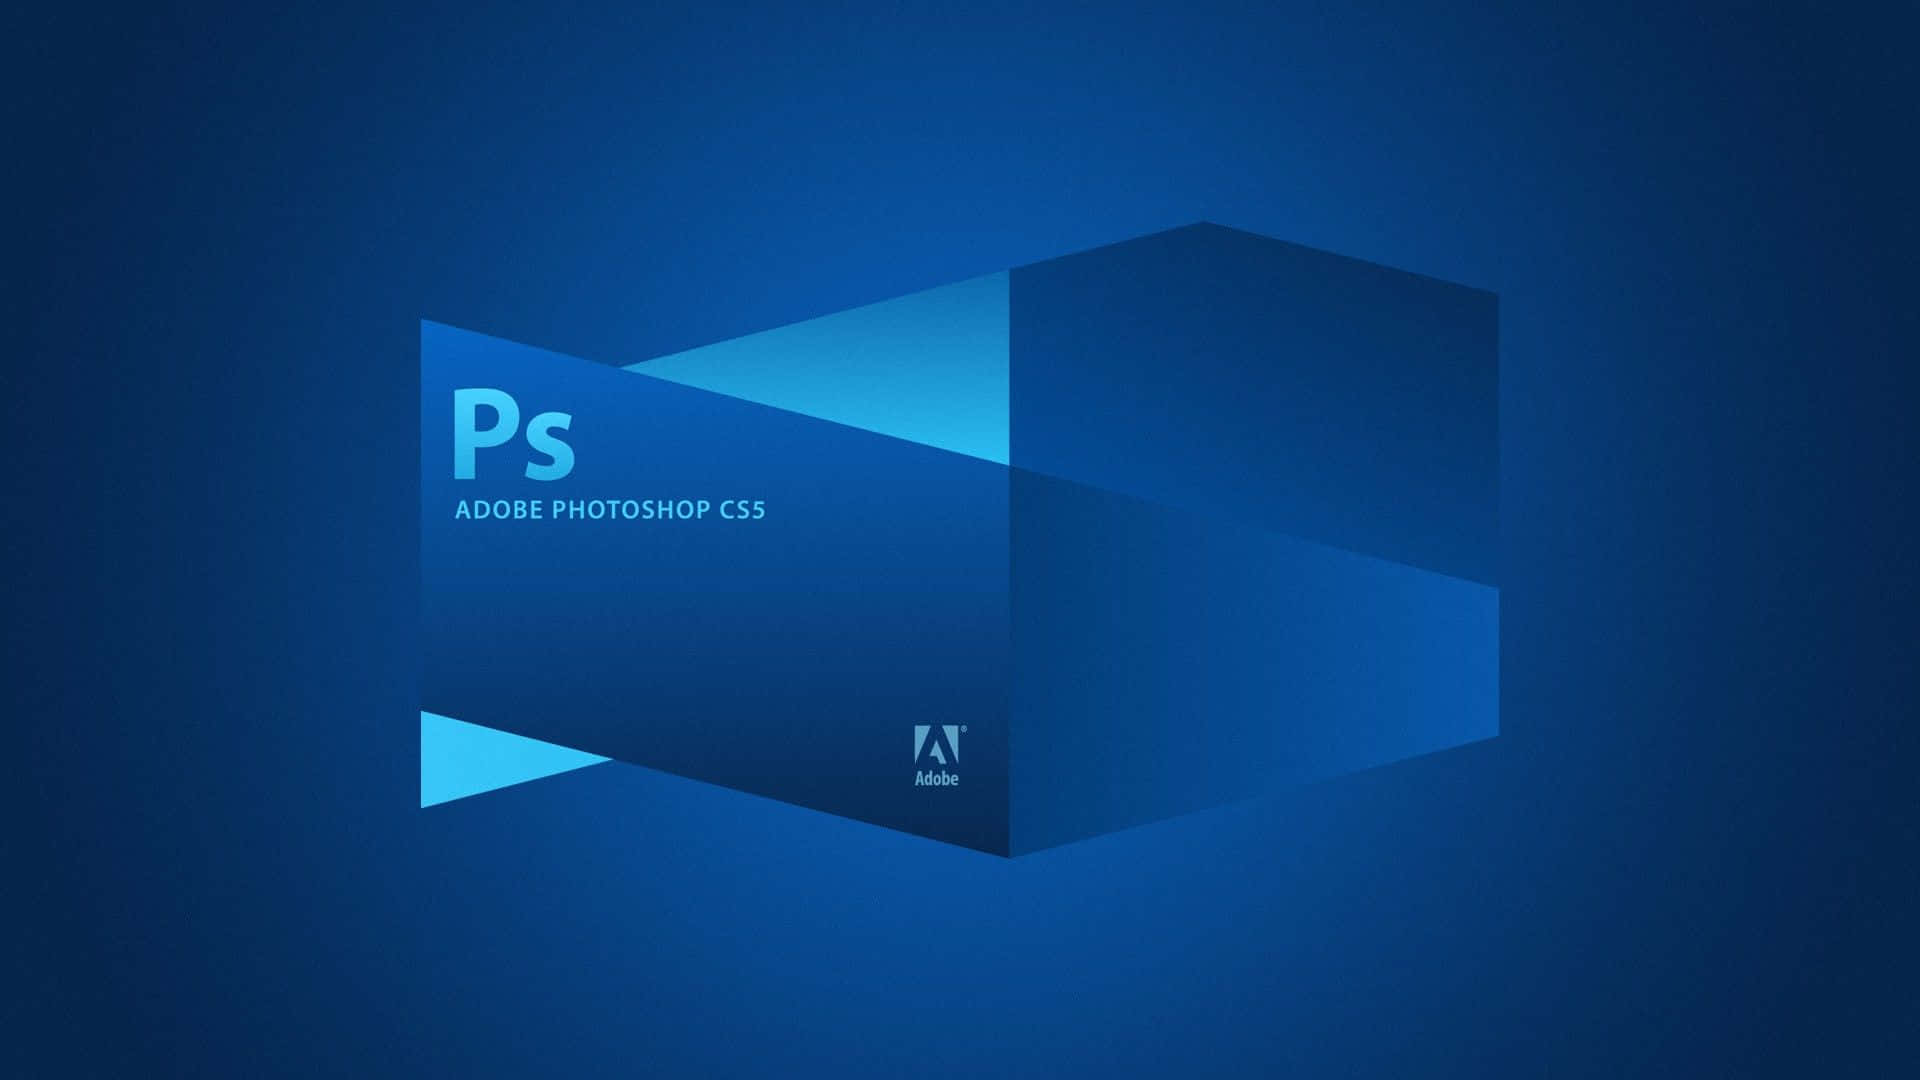 Interfazde Photoshop Adobe Cs5 Fondo de pantalla